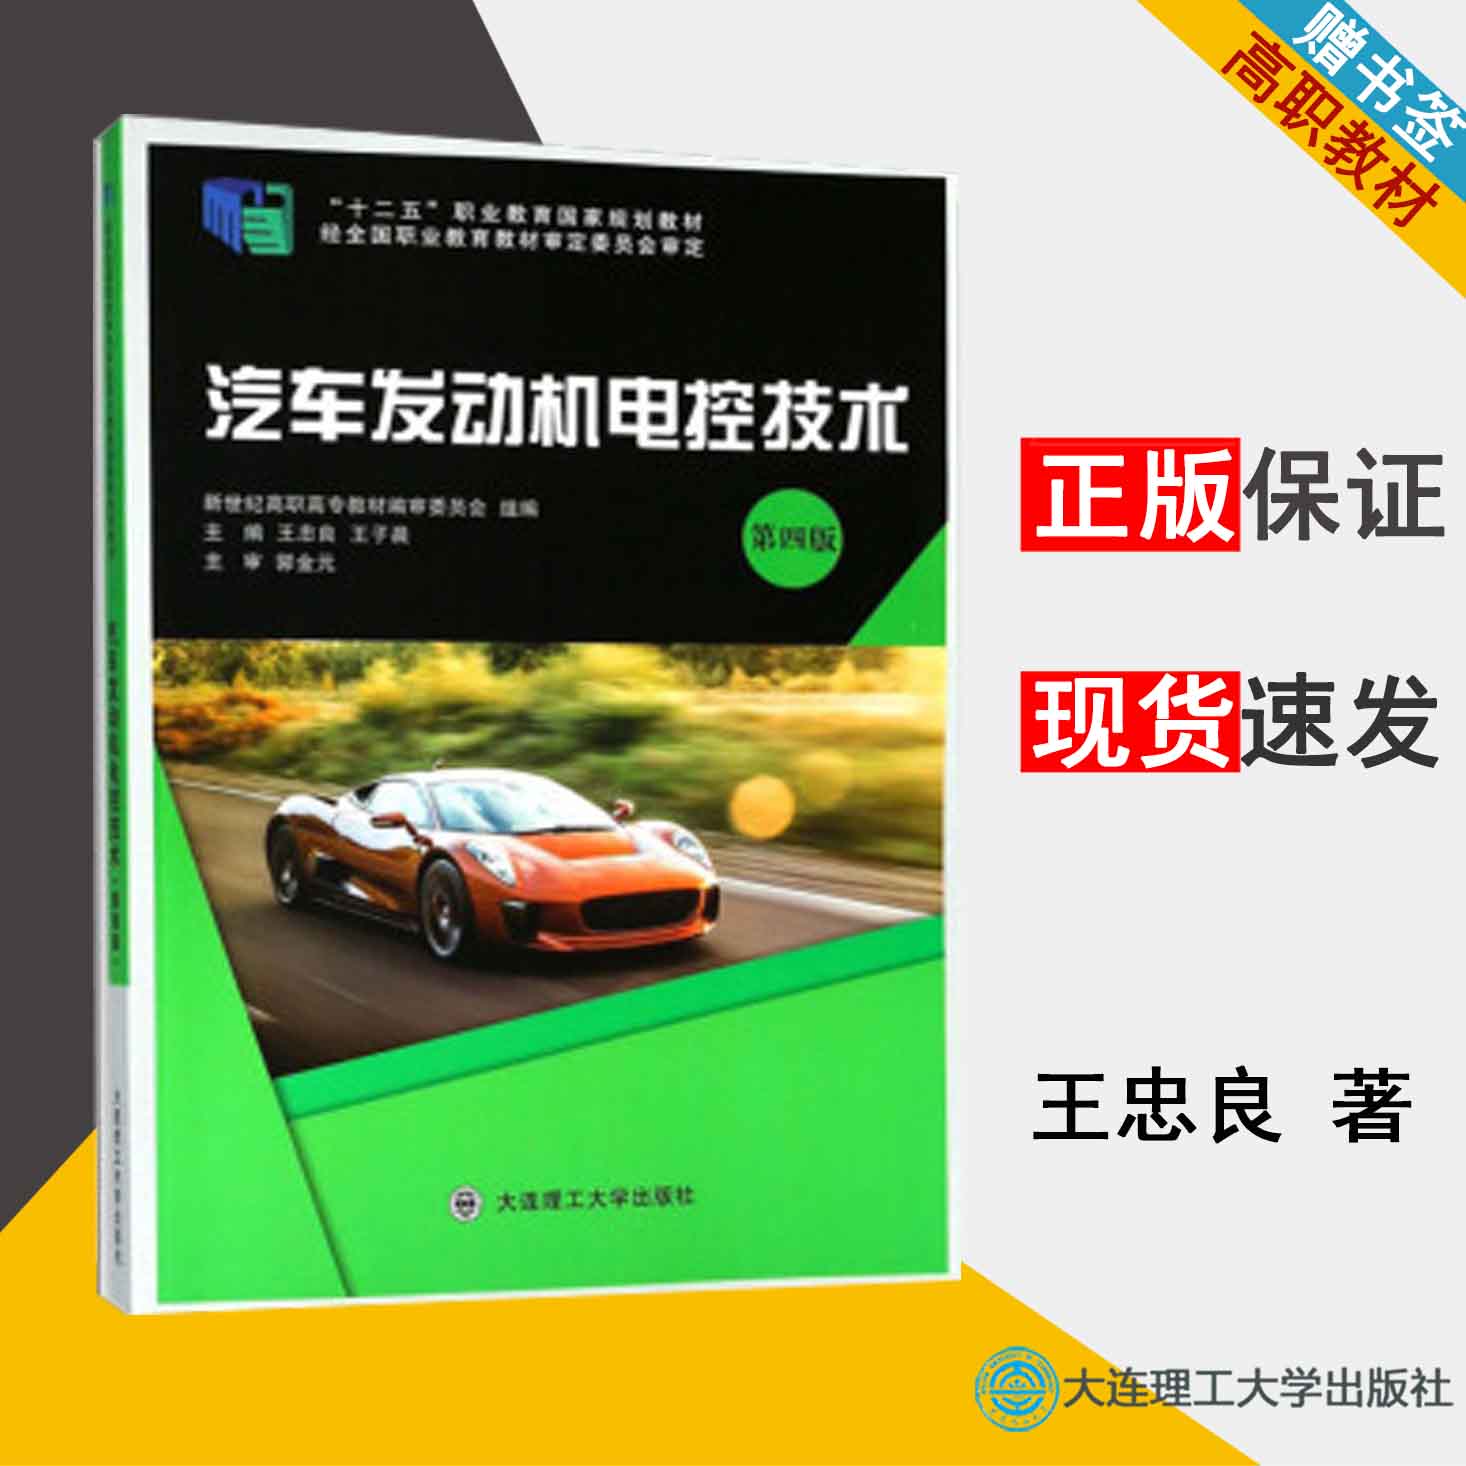 汽车发动机电控技术  王忠良  第四版  汽车维修 高职教材 大连理工大学出版社9787568514125  书籍